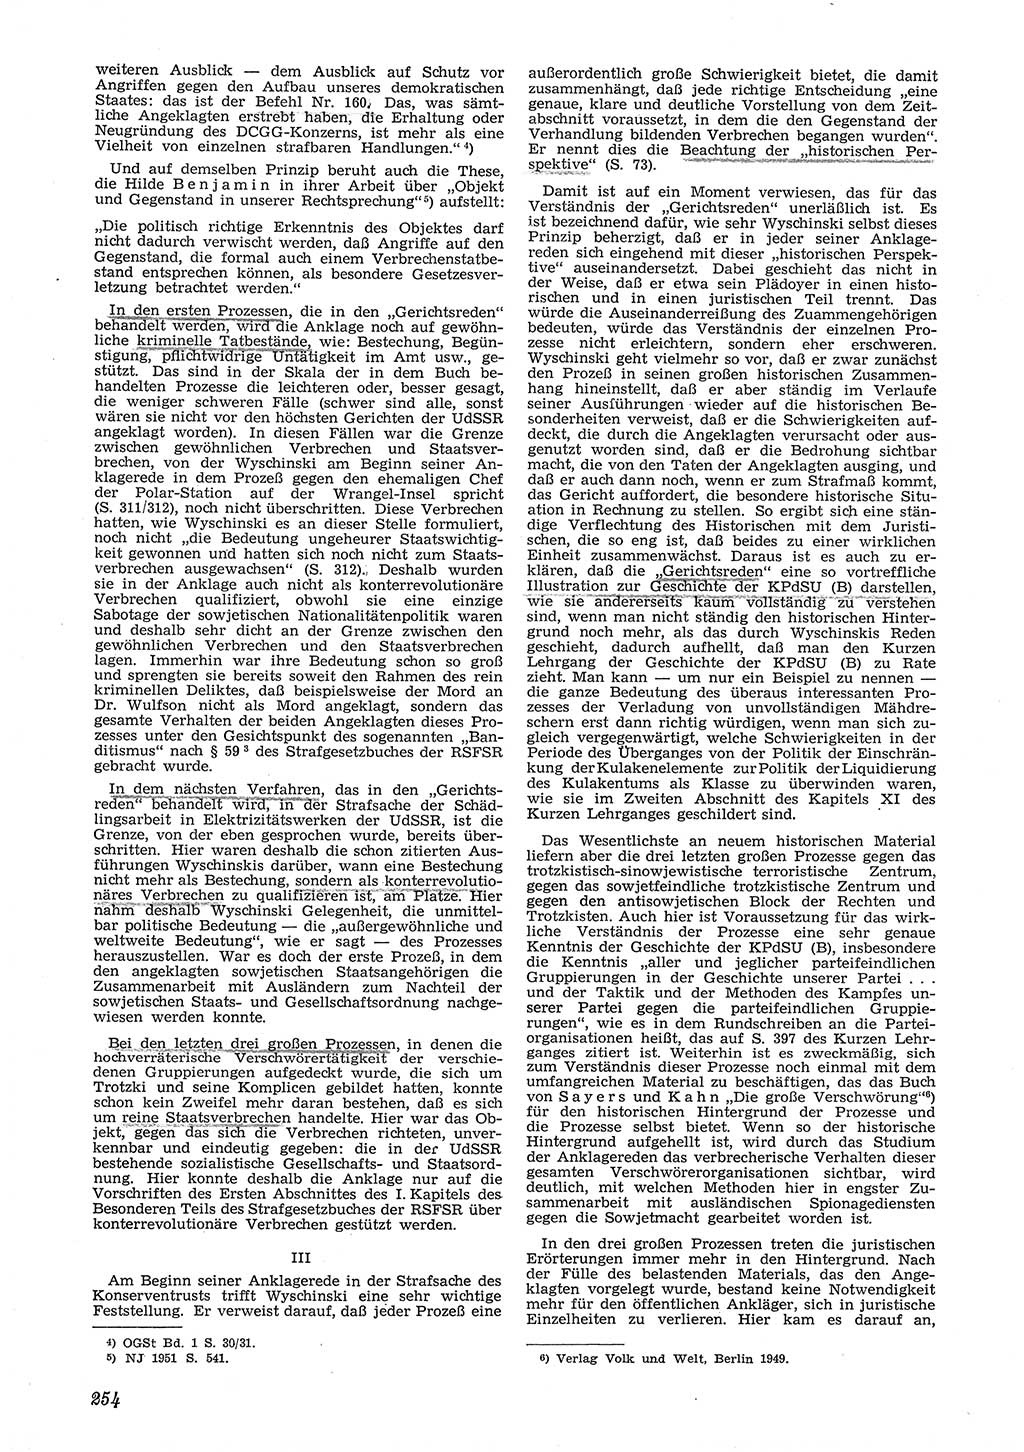 Neue Justiz (NJ), Zeitschrift für Recht und Rechtswissenschaft [Deutsche Demokratische Republik (DDR)], 6. Jahrgang 1952, Seite 254 (NJ DDR 1952, S. 254)